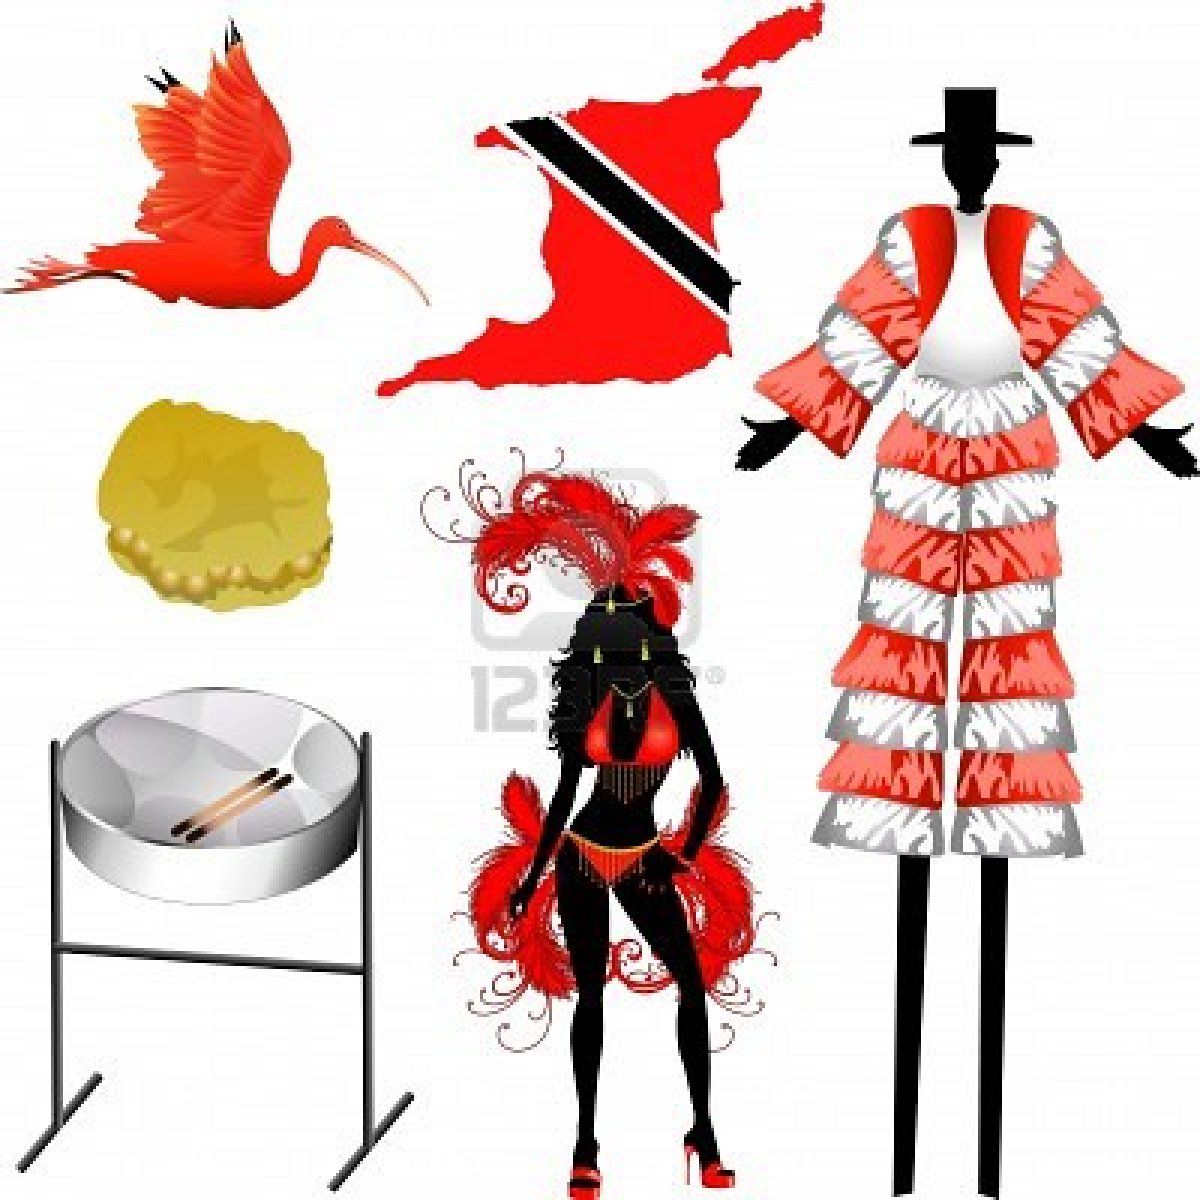 carnival clipart trinidad